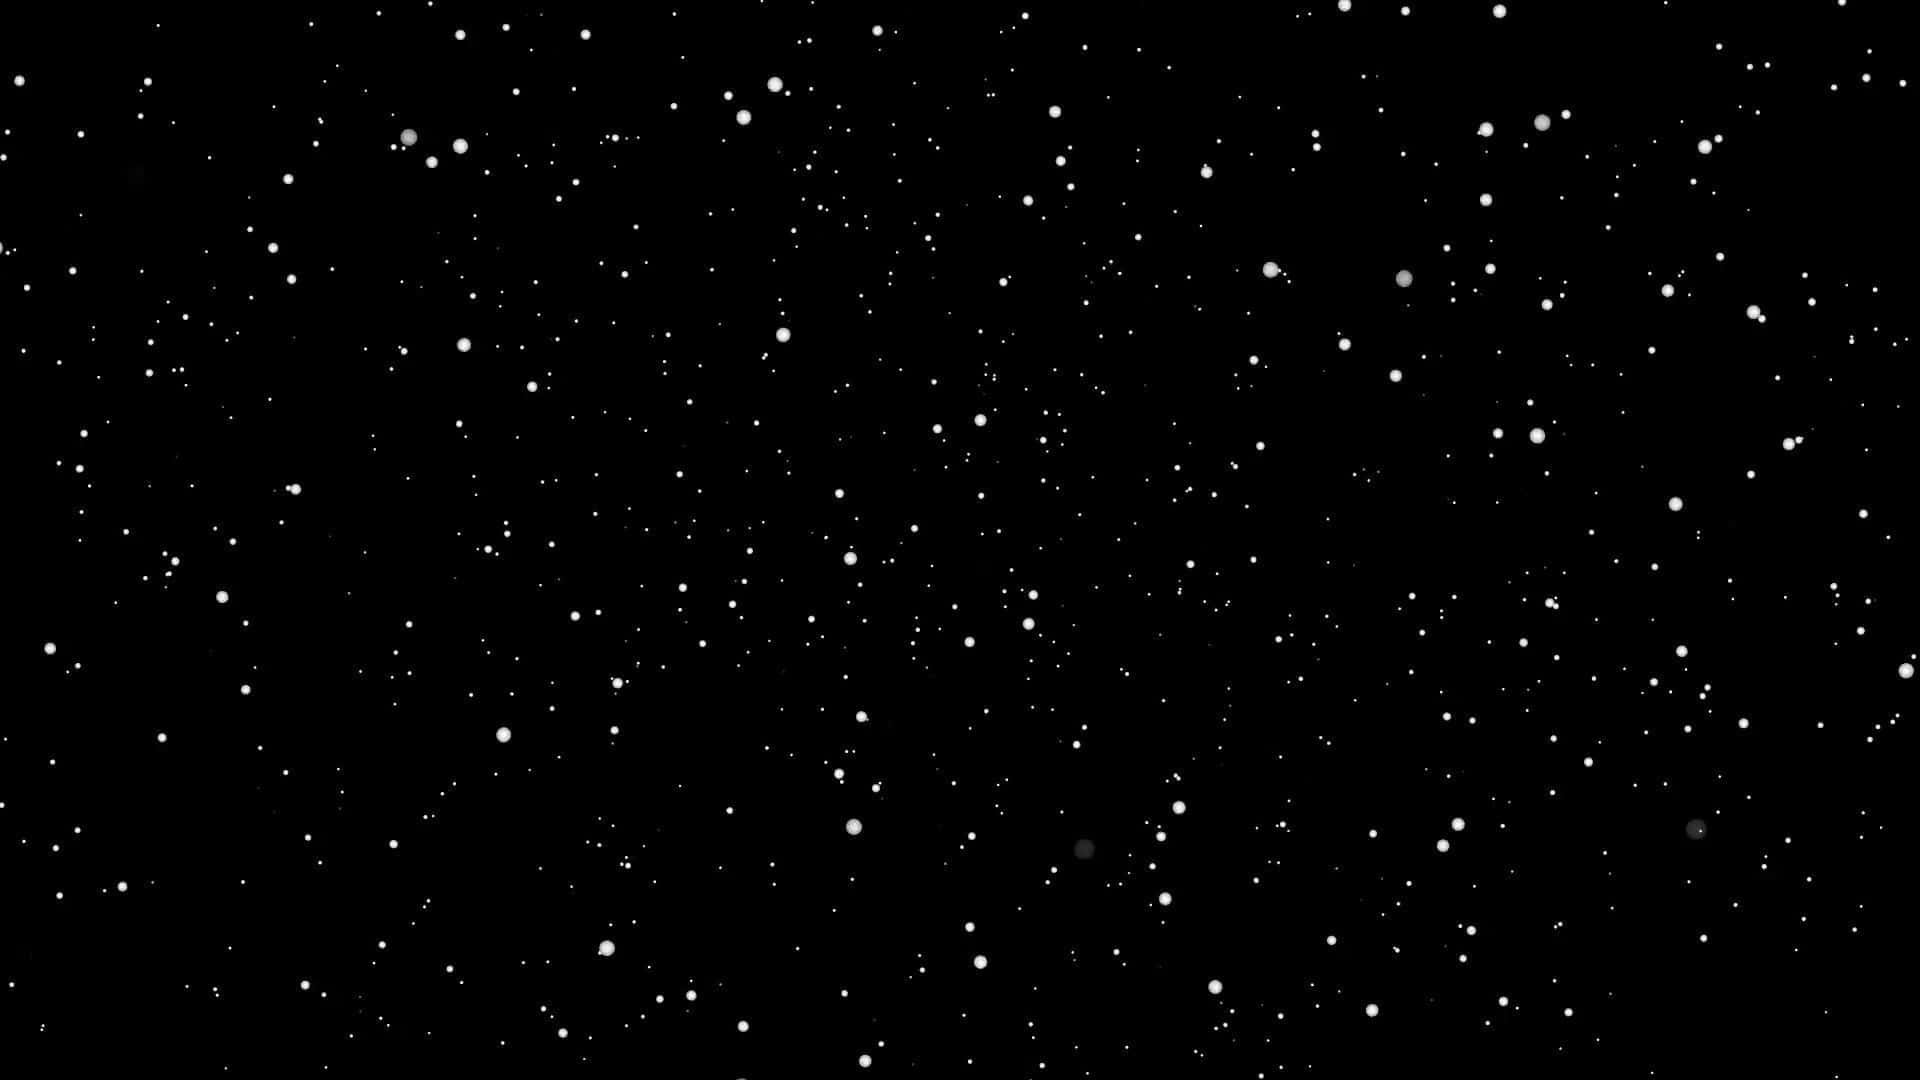 Estrellasen El Espacio, Imagen De Star Wars.